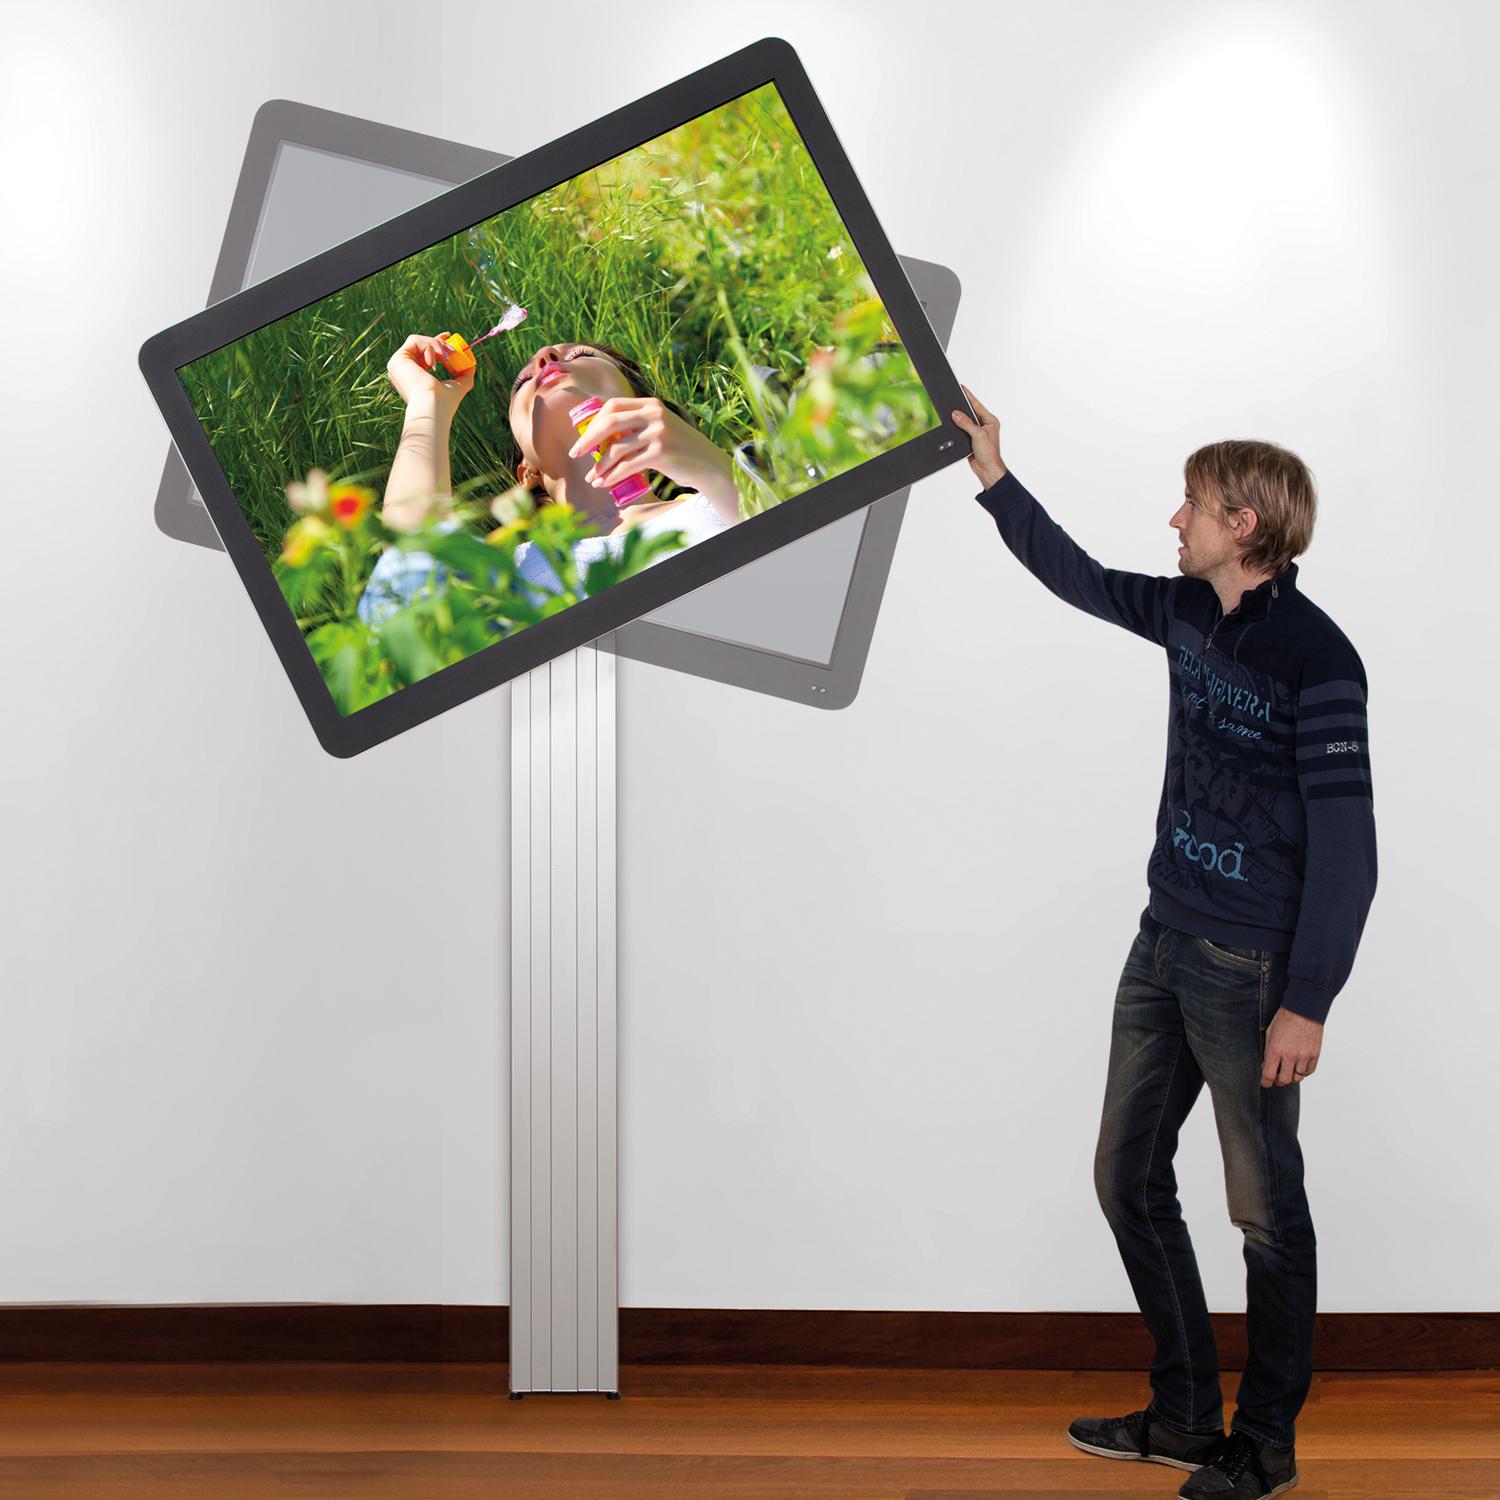 Vaste TV standaard in portret of landschap modus 195 cm voor 42 tot 100 inch schermen voor wandmontage